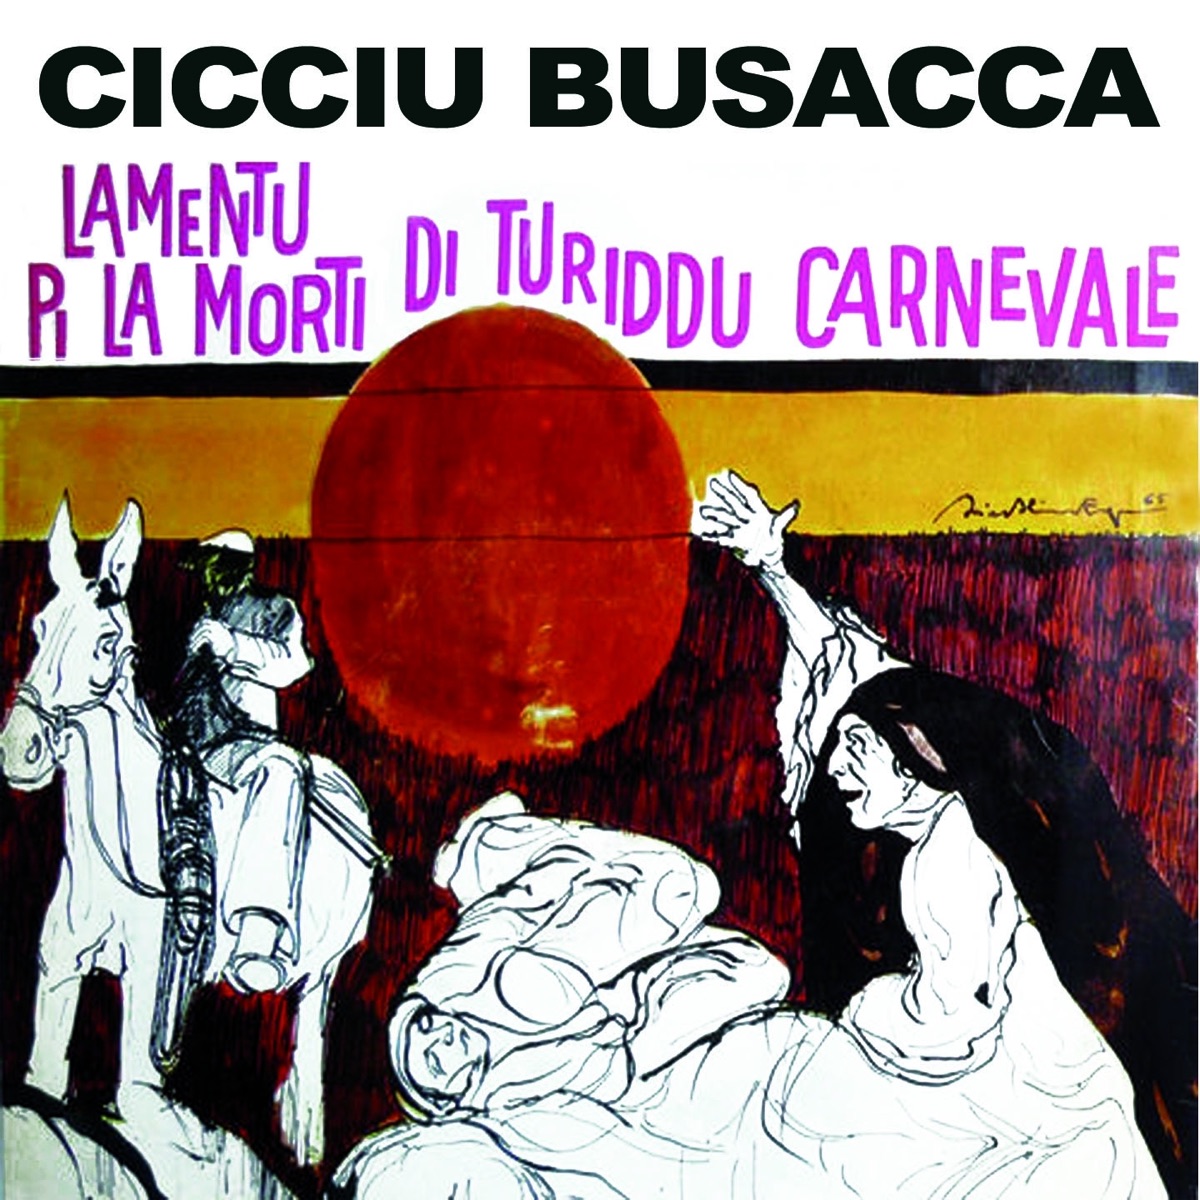 La storia di Giovanni Accetta by Cicciu Busacca on Apple Music